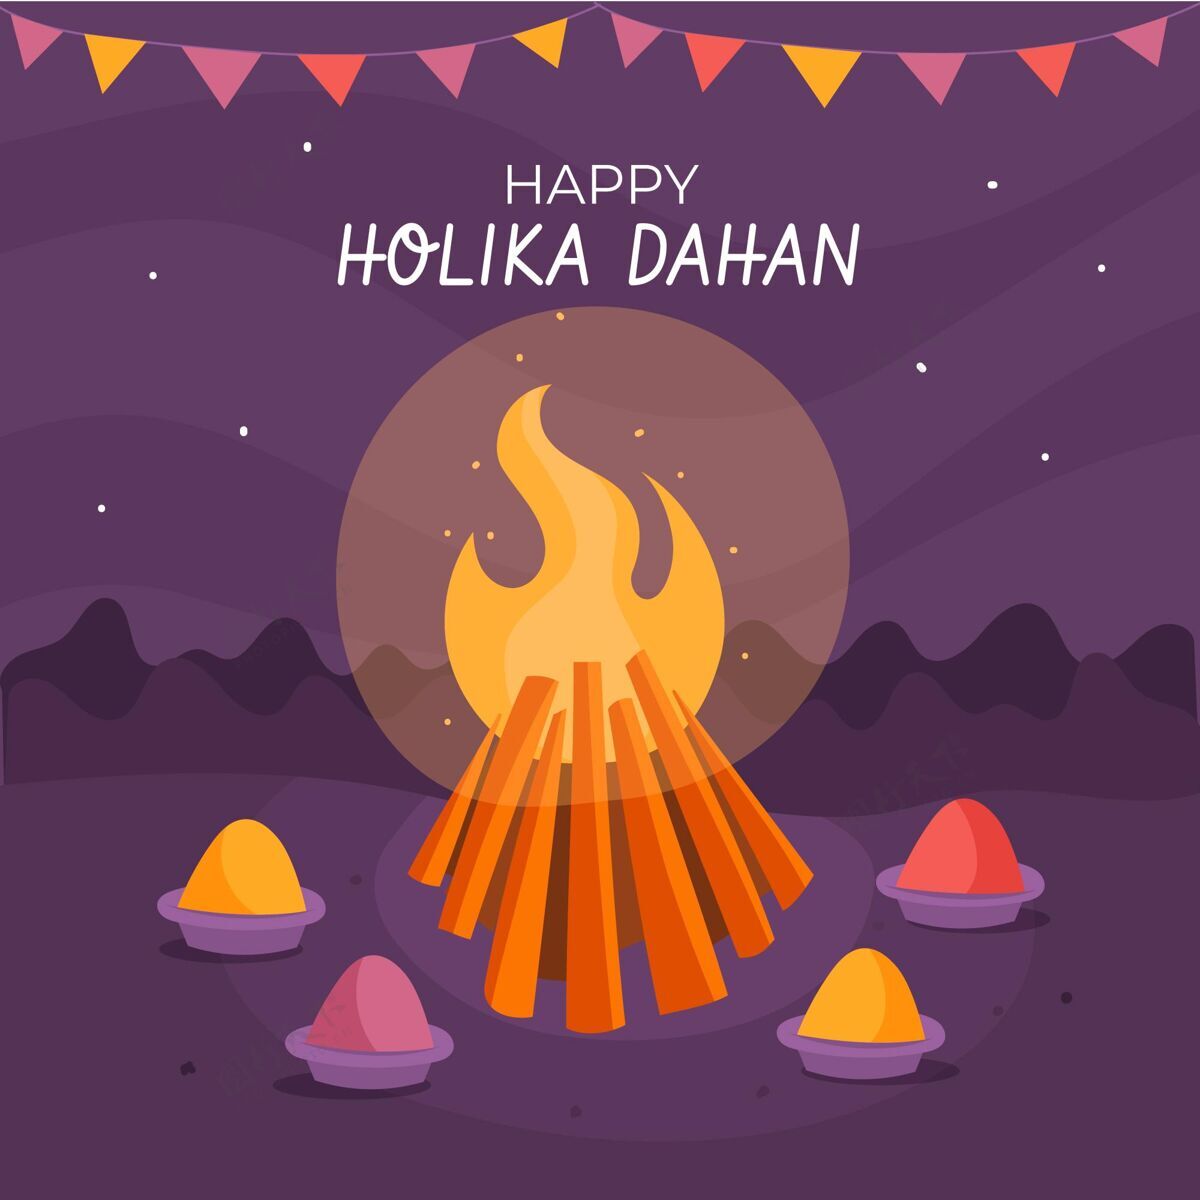 霍利卡手绘霍利卡达汉与篝火和花环插图插图印度印度教